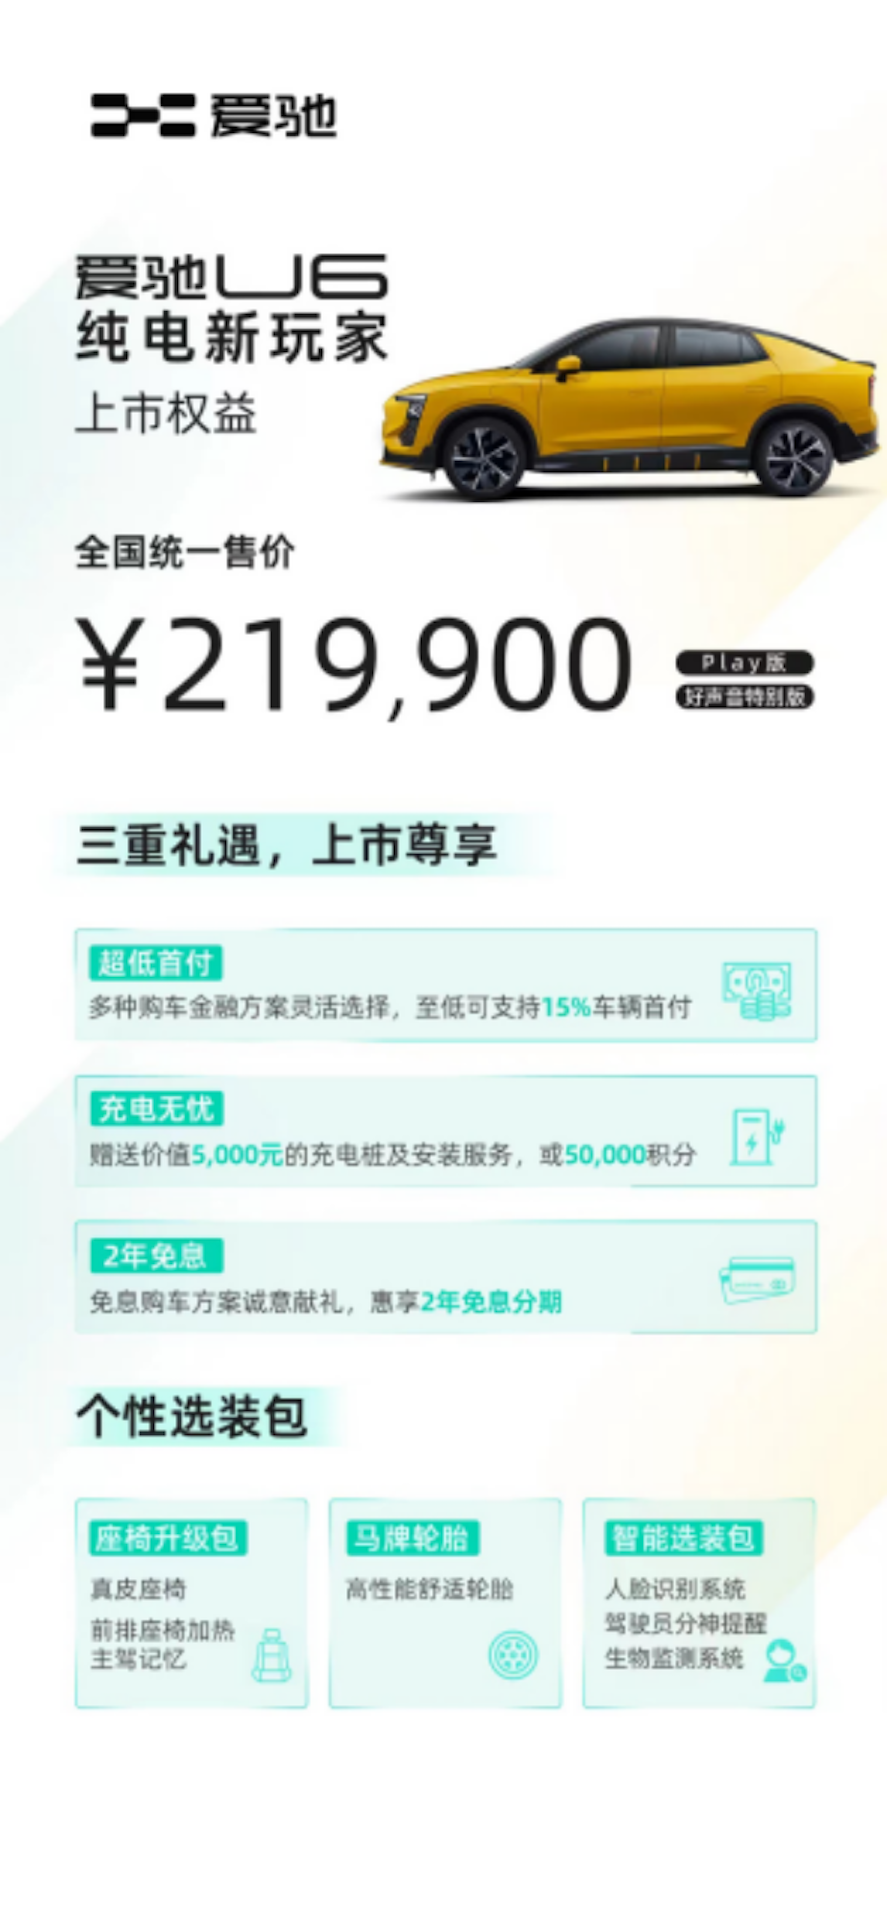 补贴后售价21.99万元 纯电新玩家爱驰U6正式上市536.png